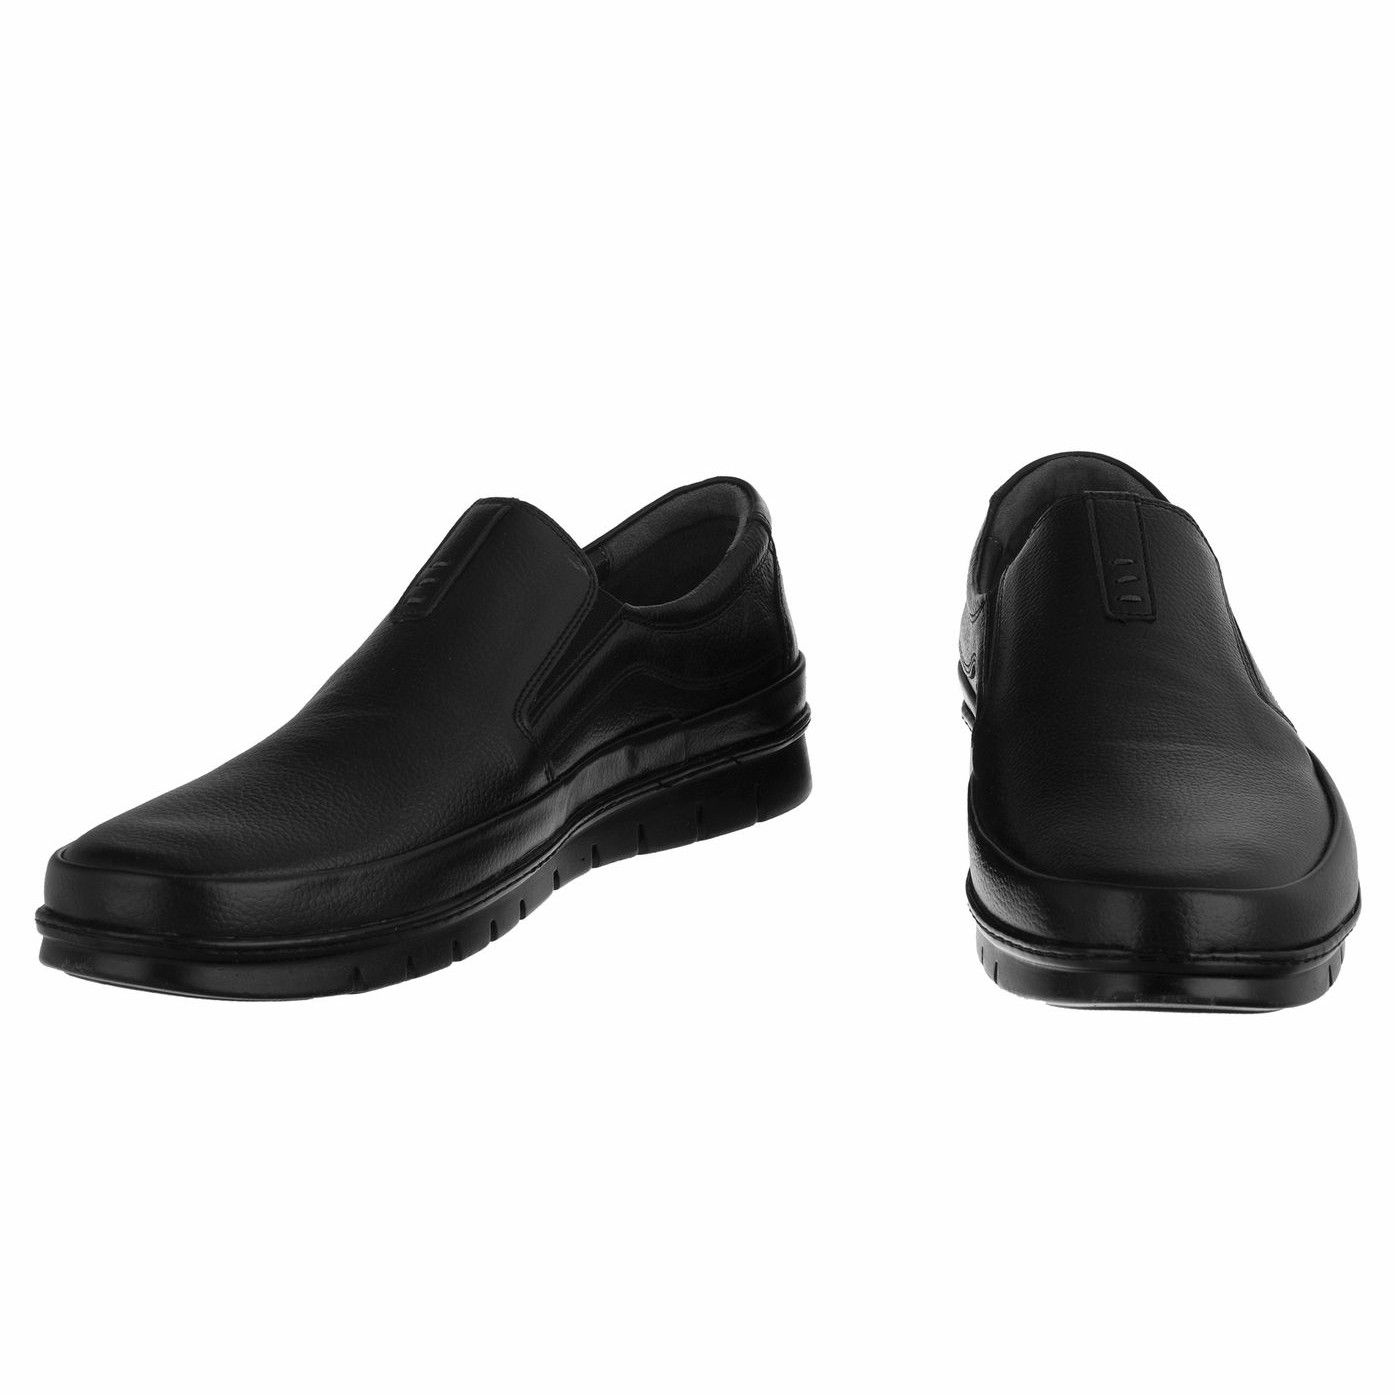 کفش روزمره مردانه دلفارد مدل چرم طبیعی کد A503101 -  - 3